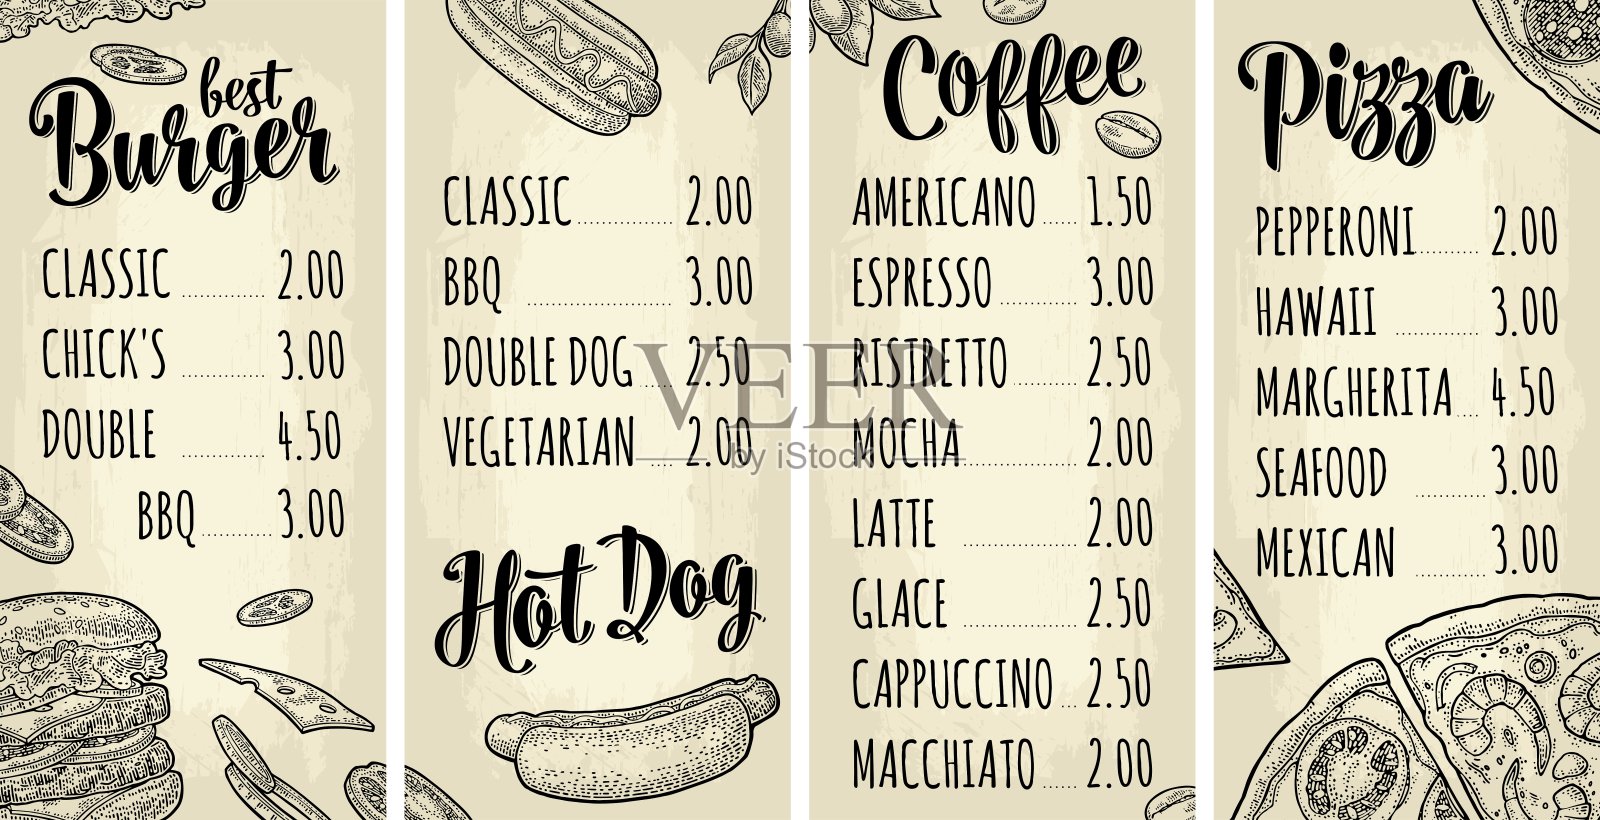 餐厅或咖啡馆菜单咖啡饮料与价格。设计模板素材